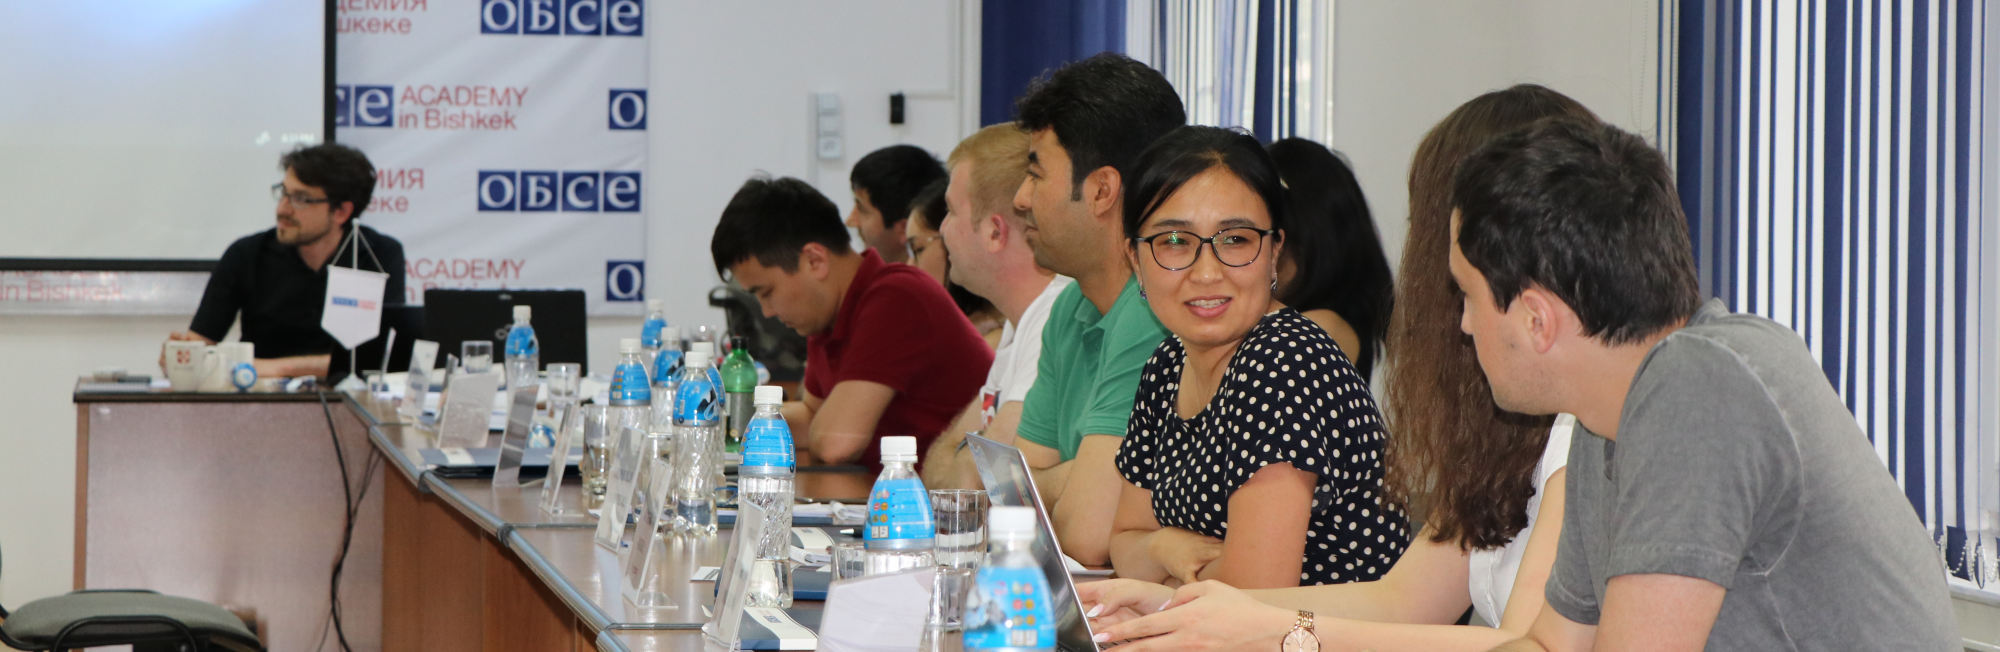 Академия ОБСЕ в Бишкеке - это региональный центр высшего образования, исследований и диалога